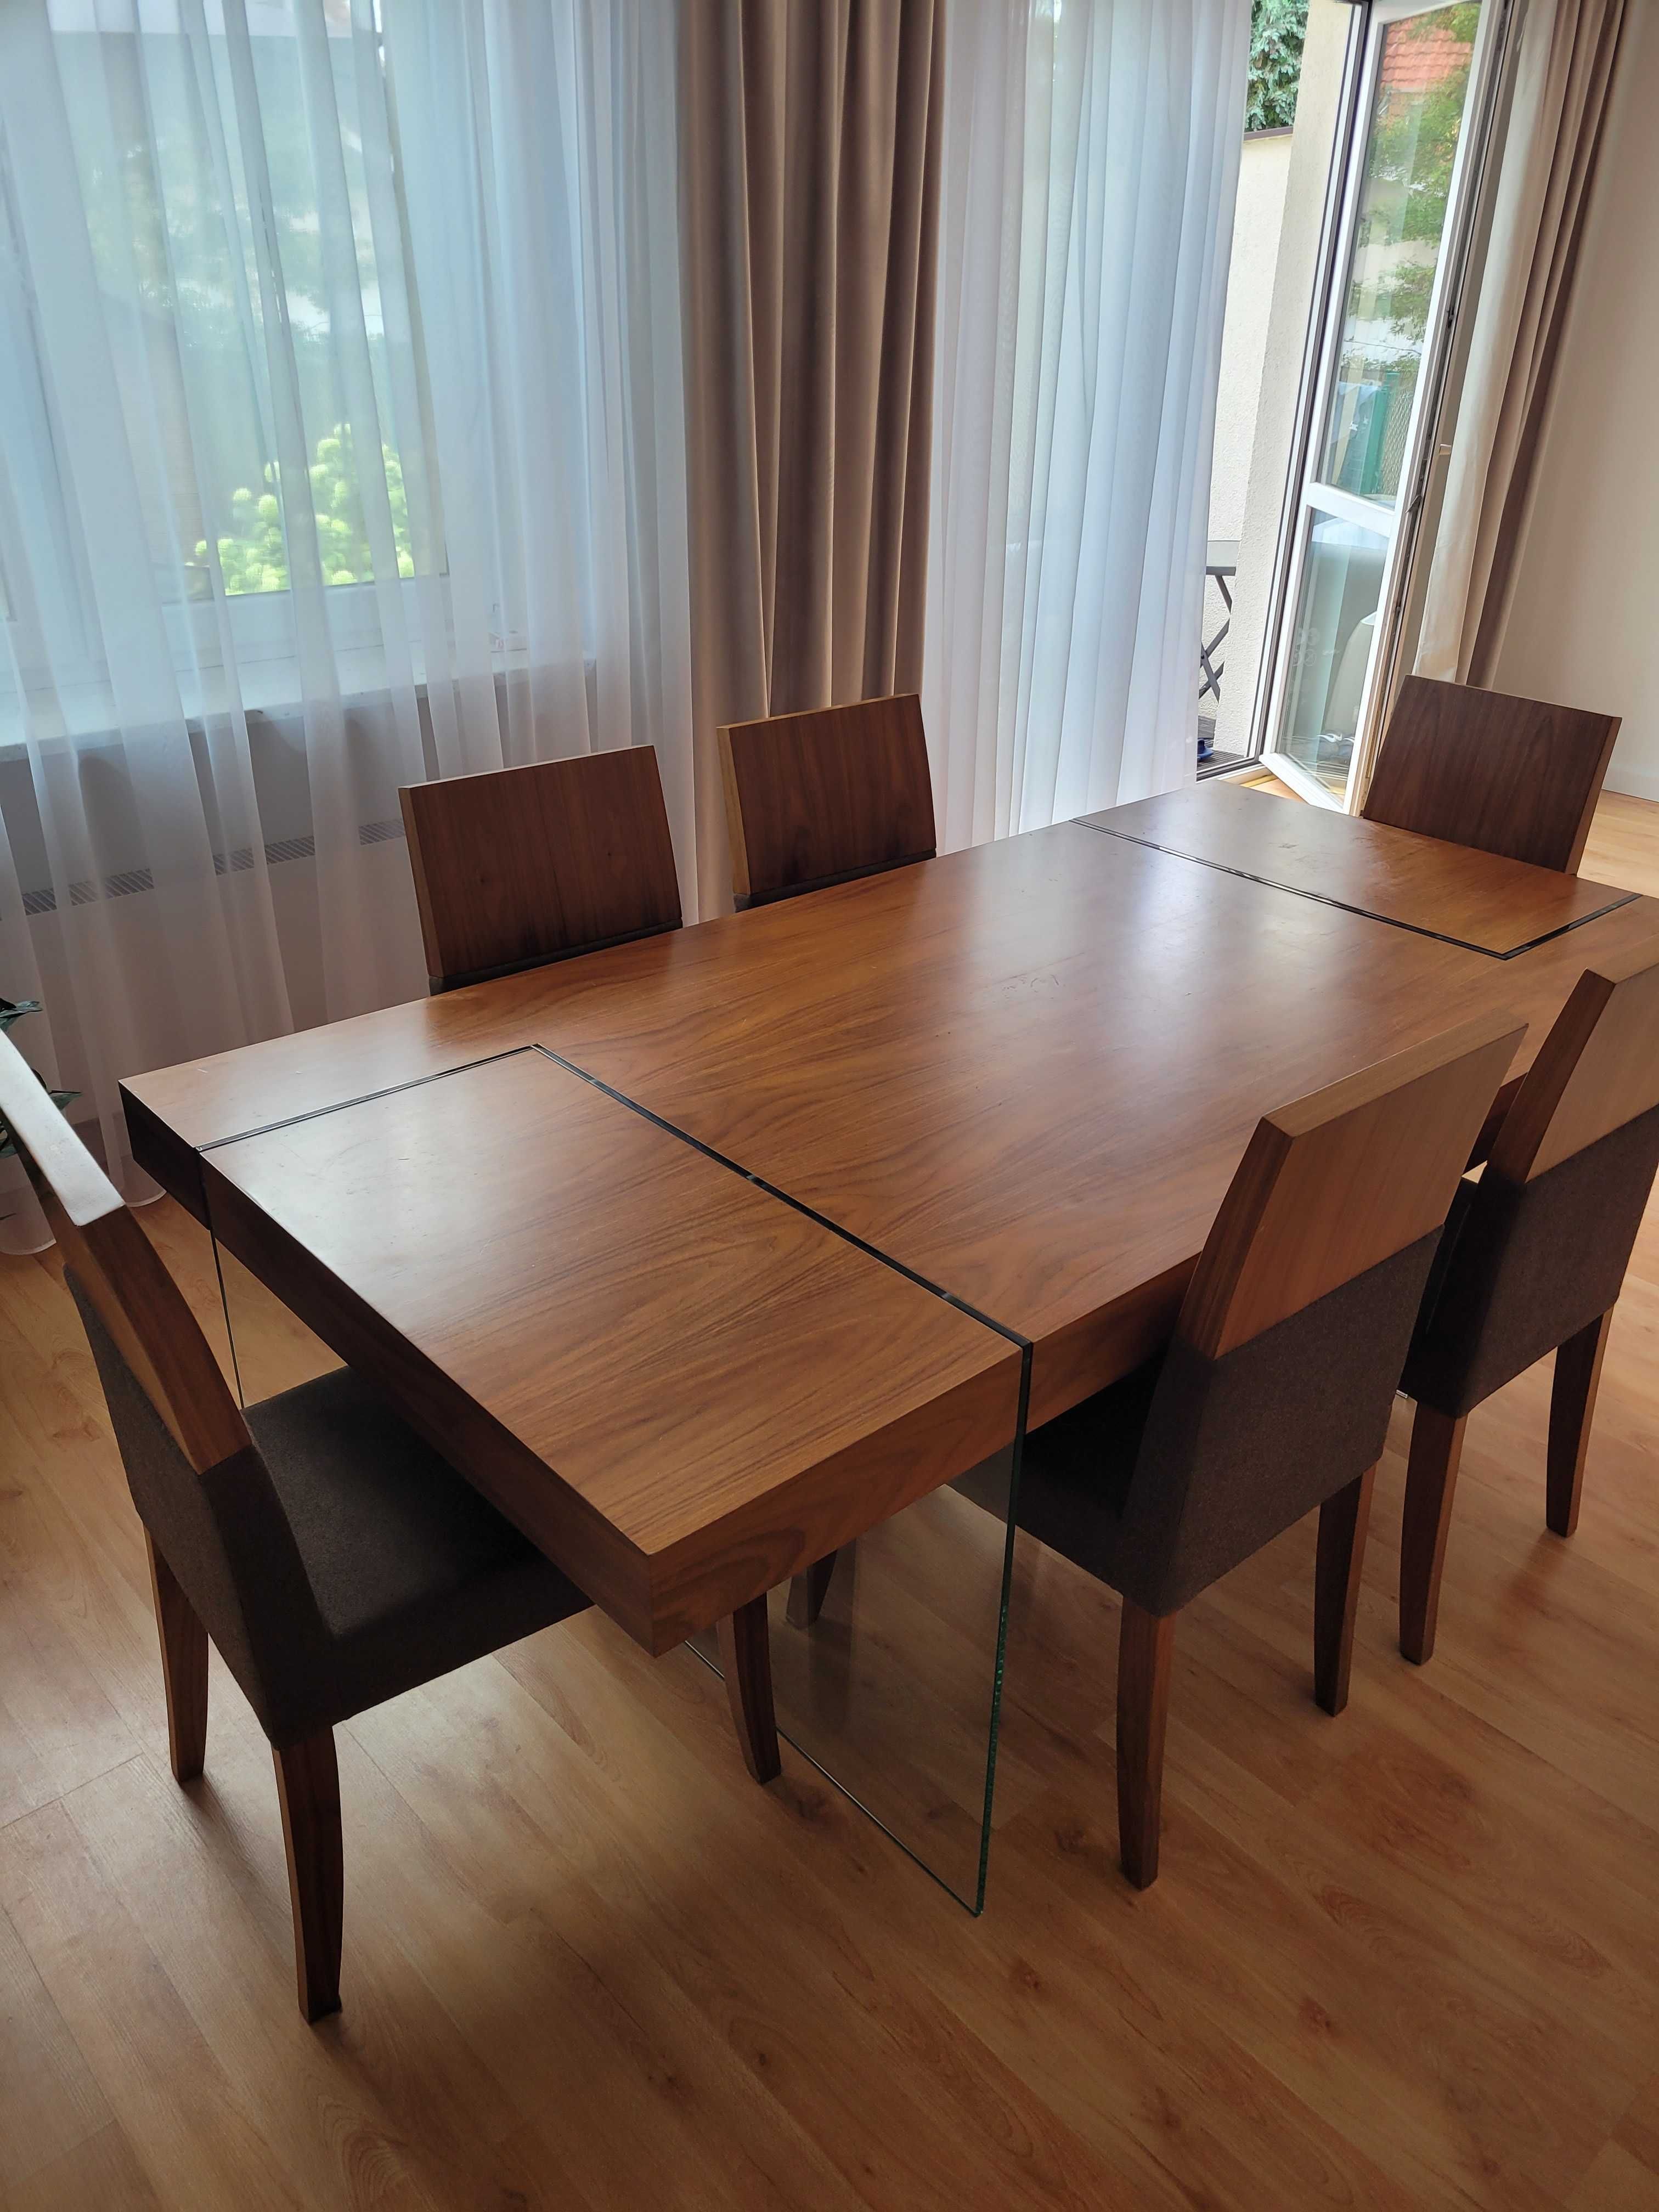 Stół do salonu jadalni duży solidny ,designerski szklane nogi  200×100